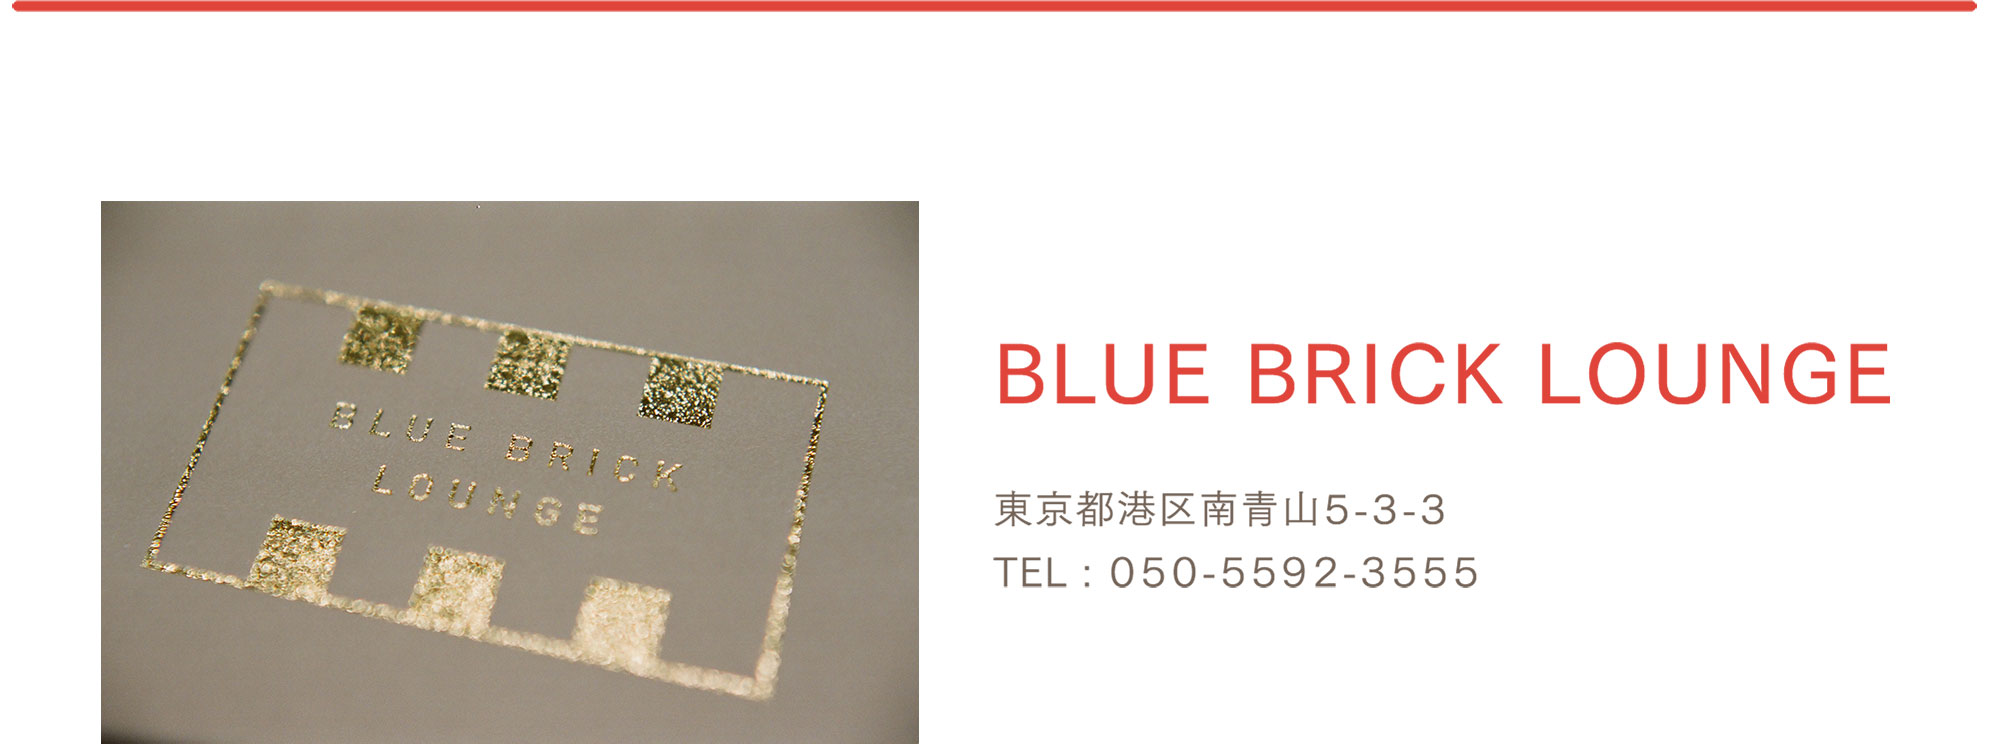 店舗情報：BLUE BRICK LOUNGE / 東京都南青山5-3-3 / TEL：050-5592-3555